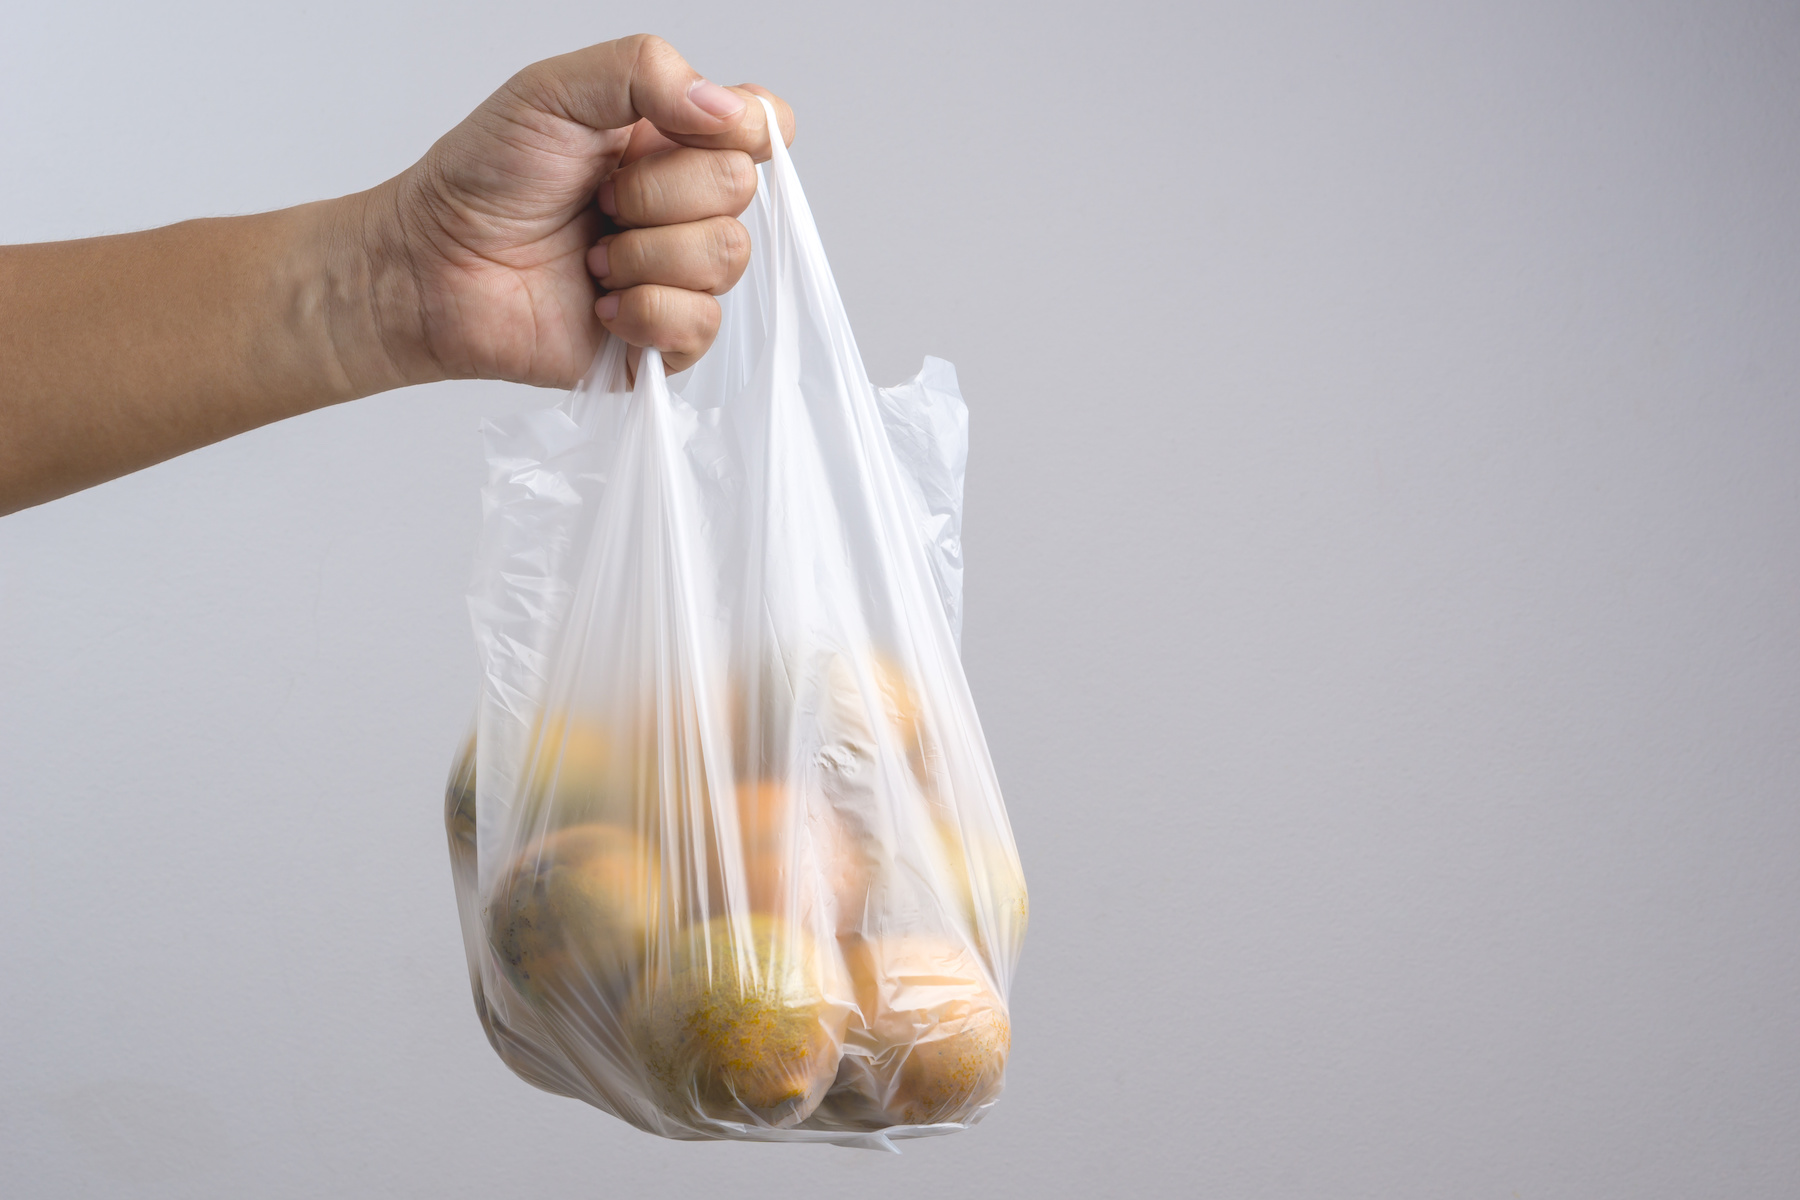 Можно греть еду в пакете. Пакет в руке. Пакет с продуктами в руке. Пластиковый пакет. Рука держит пакет.